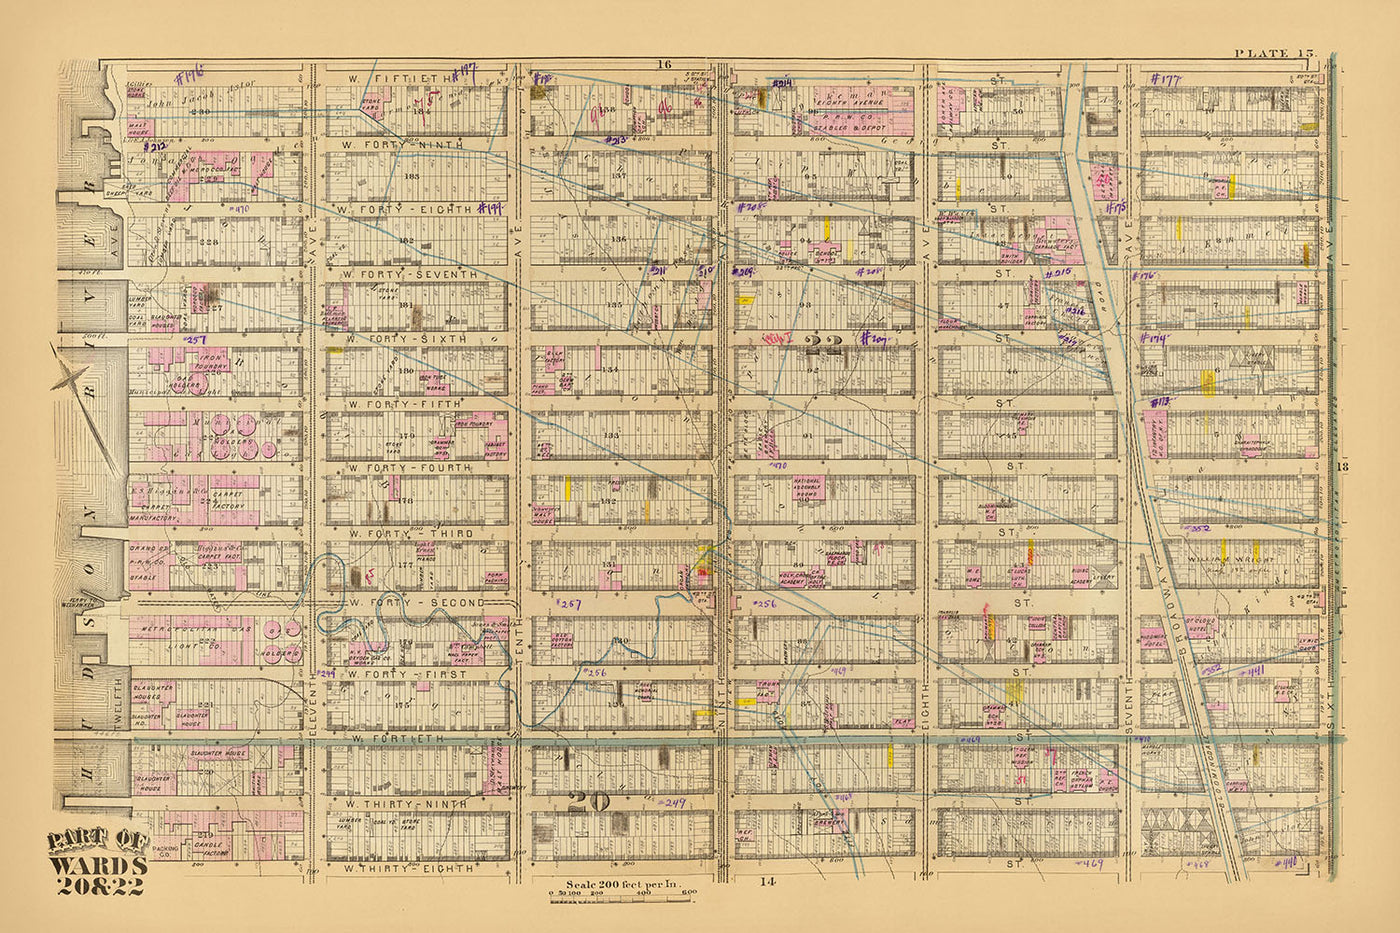 Alte Karte des Theaterviertels, New York City, 1879: Times Square, Fähre nach Weehawken, 42nd Street Station, West 38-50th St, Broadway